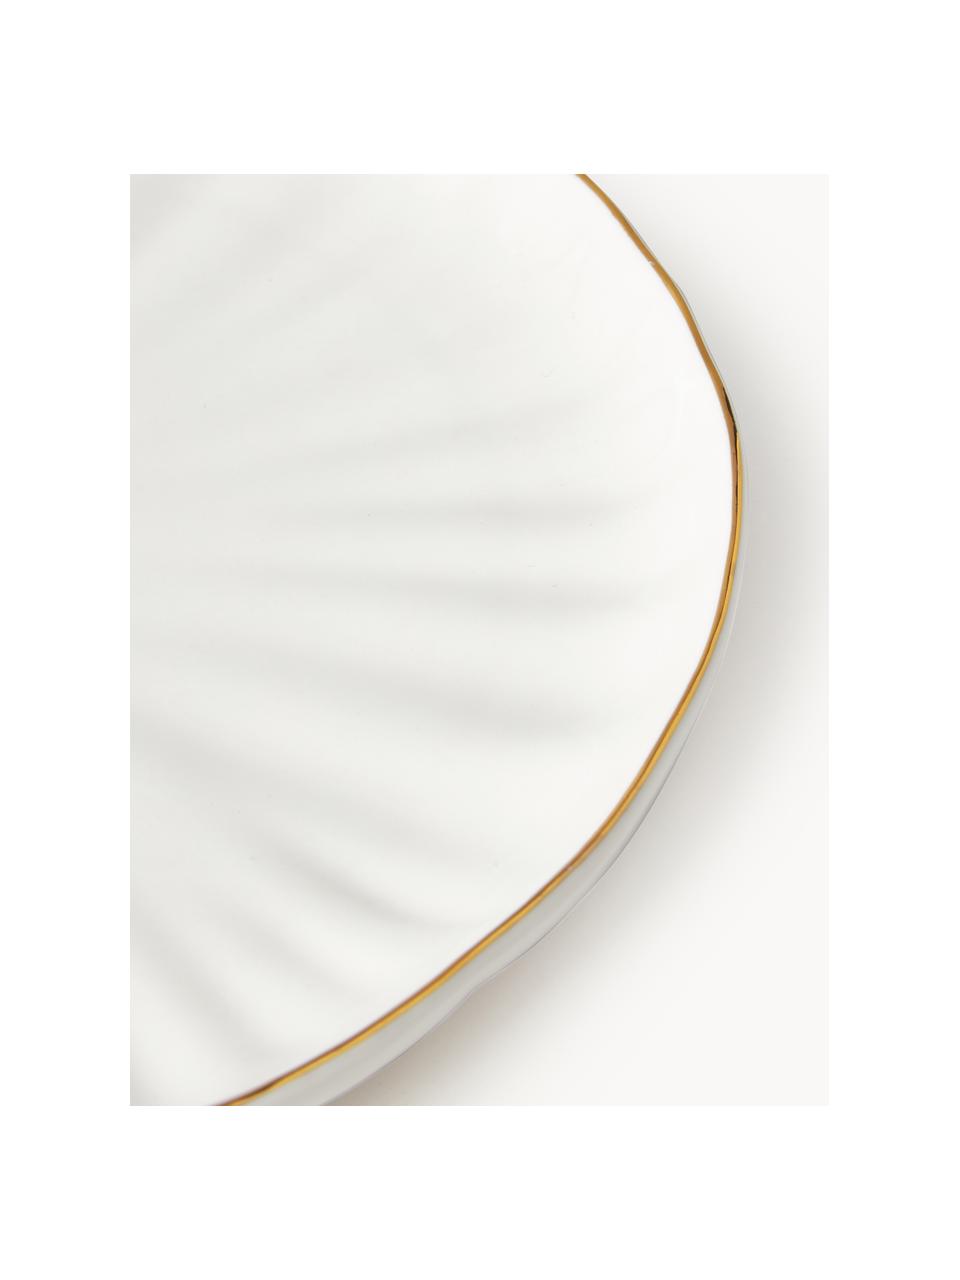 Snídaňové talíře s reliéfem Sali, 2 ks, Glazovaný porcelán, Bílá se zlatým okrajem, Ø 21 cm